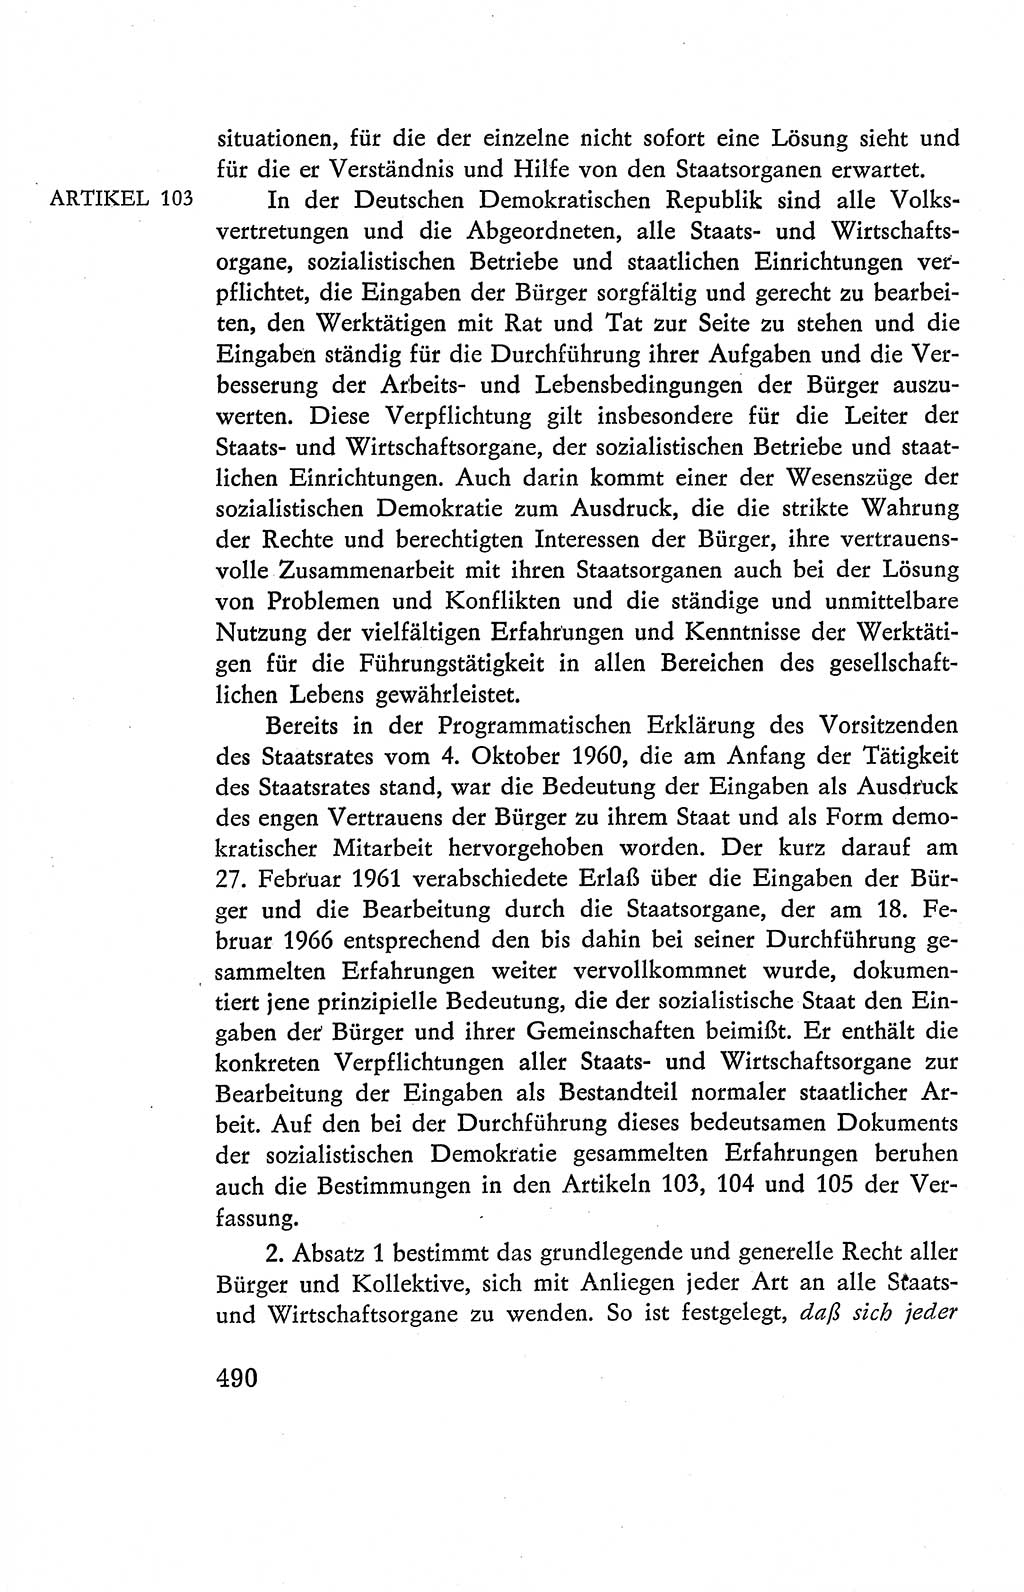 Verfassung der Deutschen Demokratischen Republik (DDR), Dokumente, Kommentar 1969, Band 2, Seite 490 (Verf. DDR Dok. Komm. 1969, Bd. 2, S. 490)